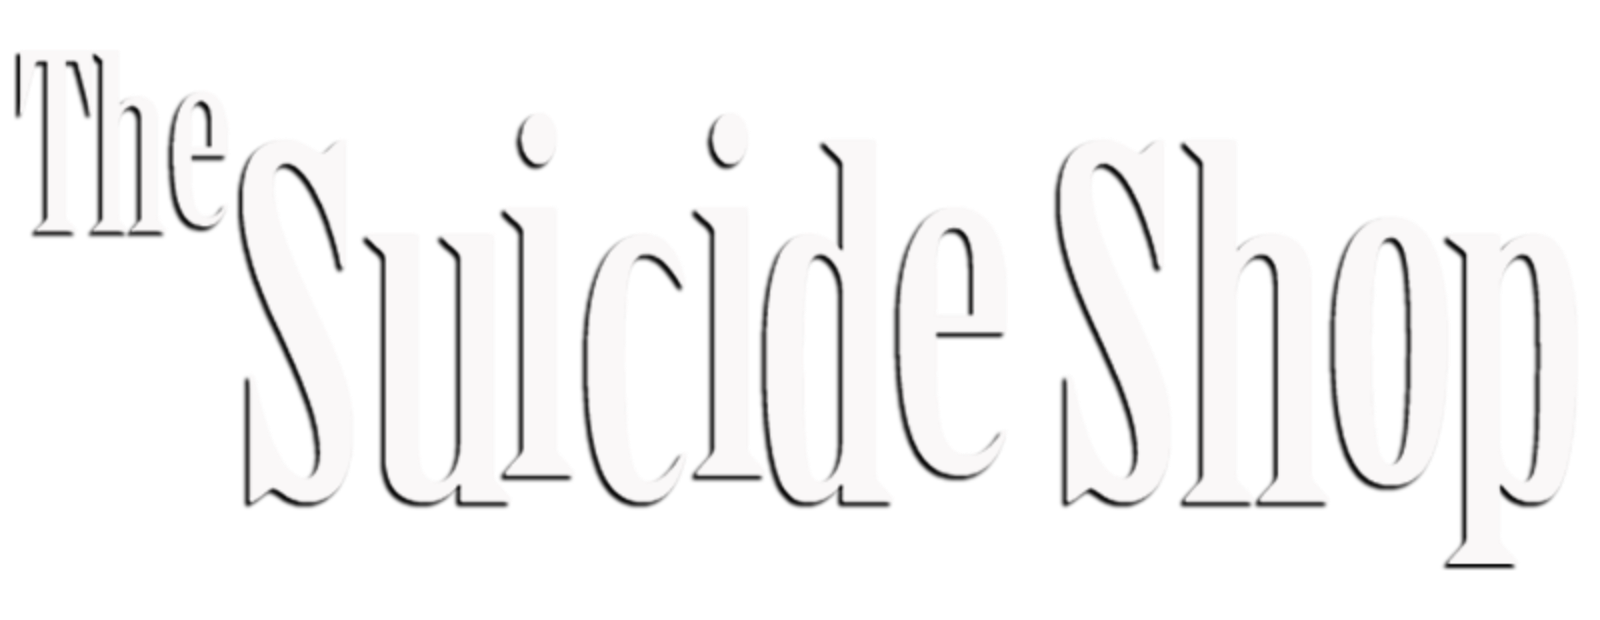 The Suicide Shop (1 DVD Box Set)